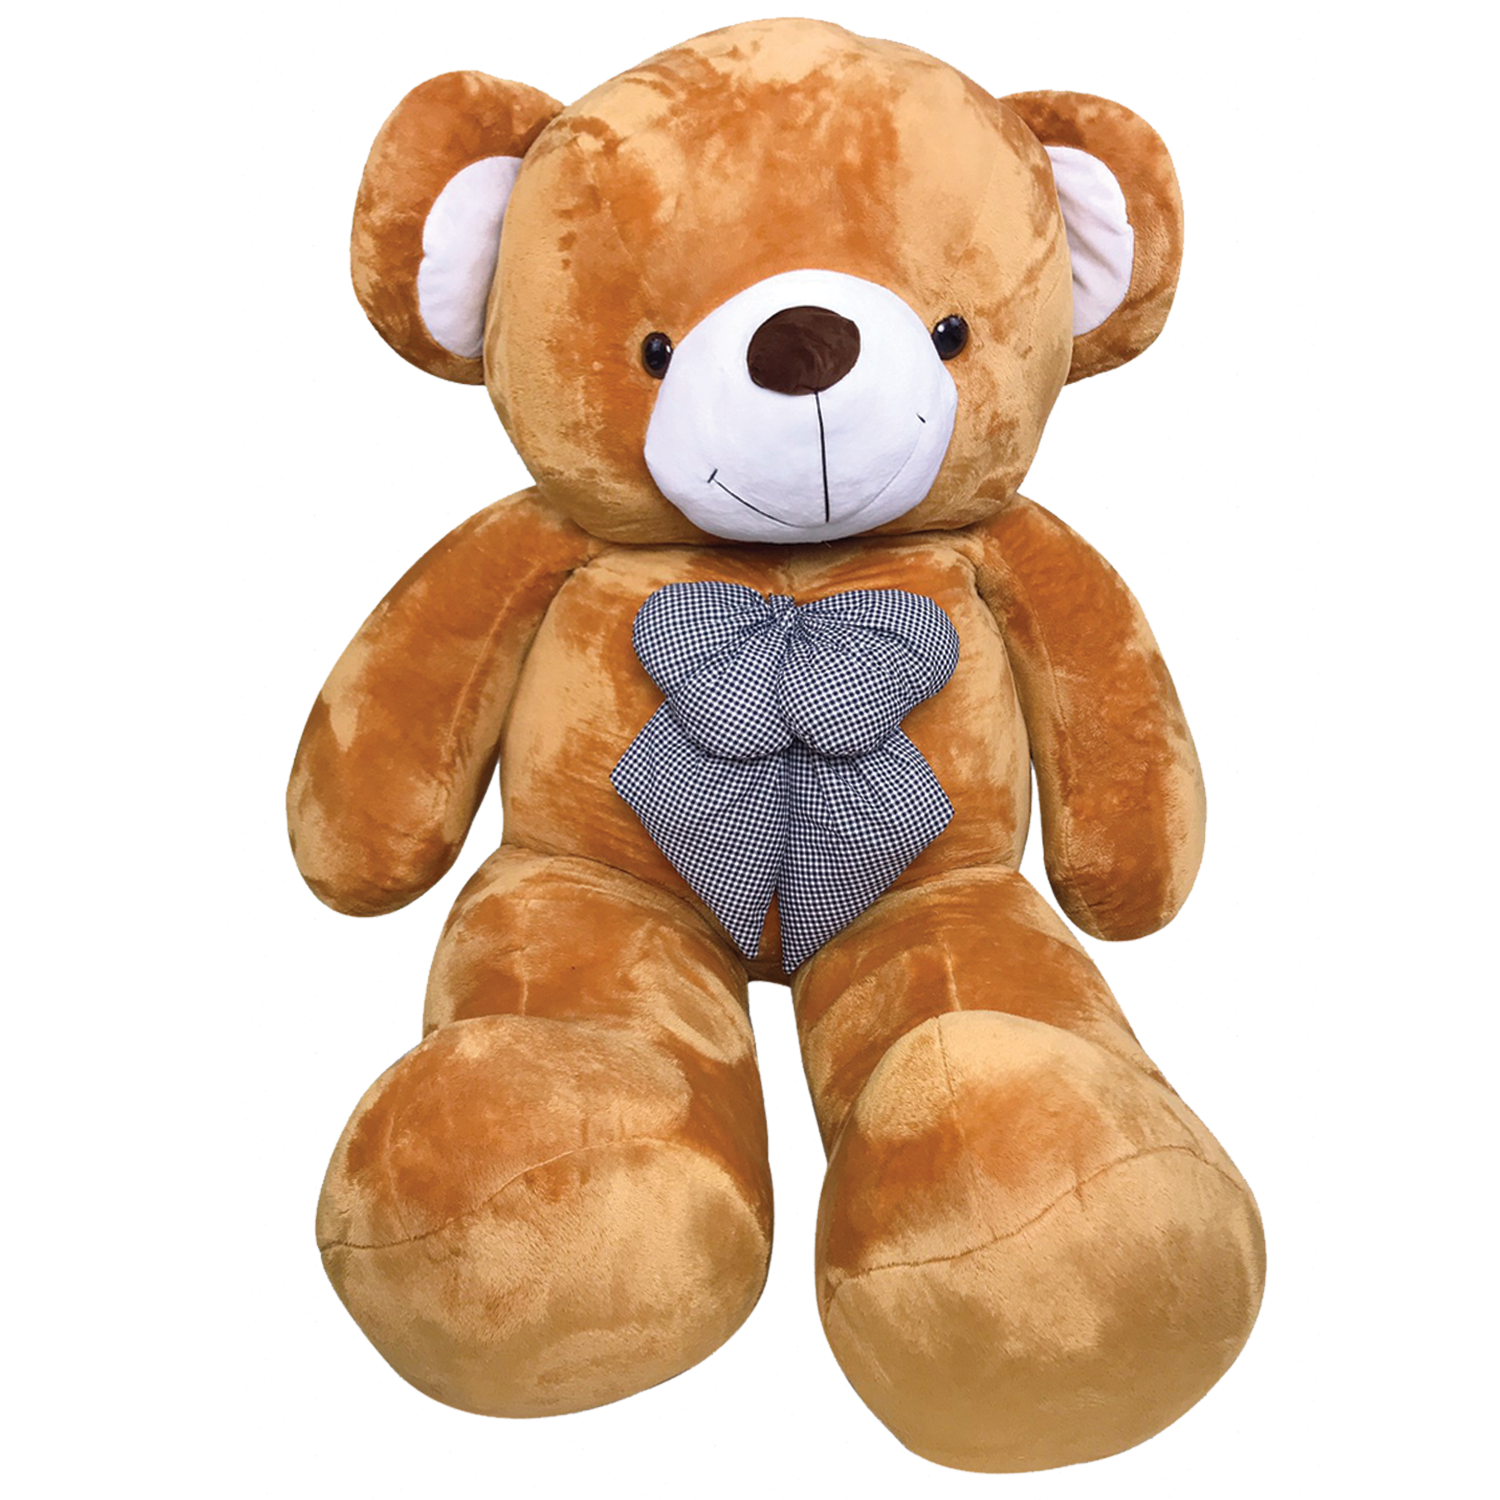 ตุ๊กตาหมีจัมโบ้ หมีตัวใหญ่มาก หมียักษ์ ขนาด 2.4 เมตร สีน้ำตาล